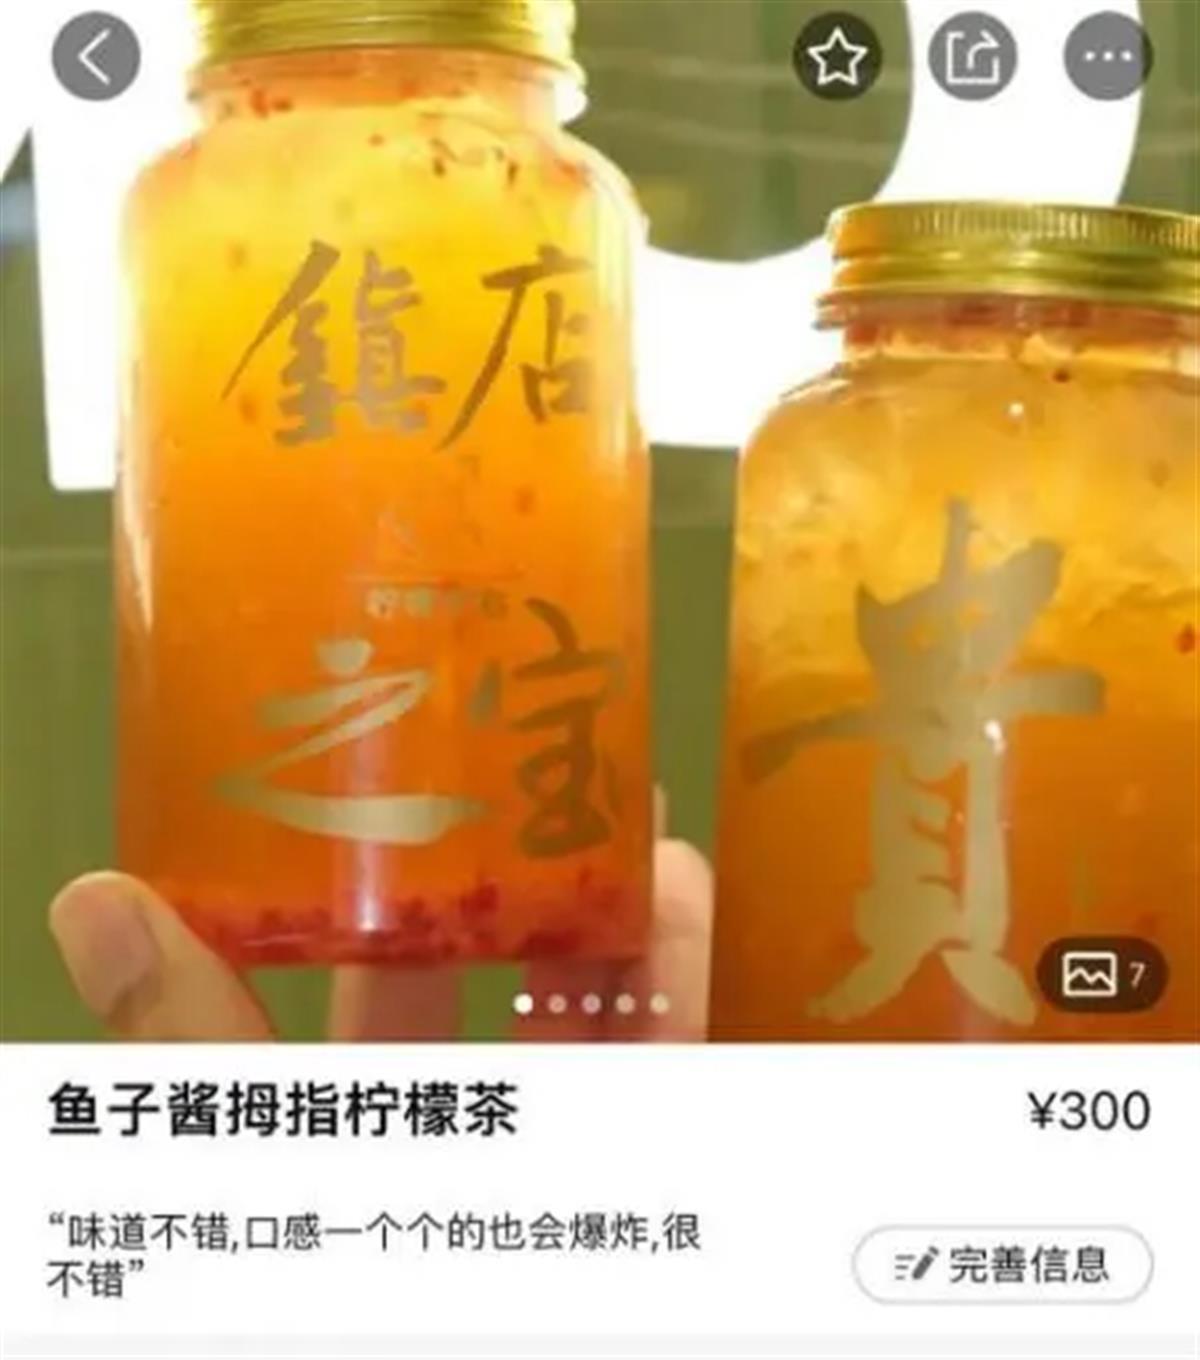 300元一杯的柠檬茶因虚假宣传被罚20万元 公司：以后还会继续卖 明码标价没问题